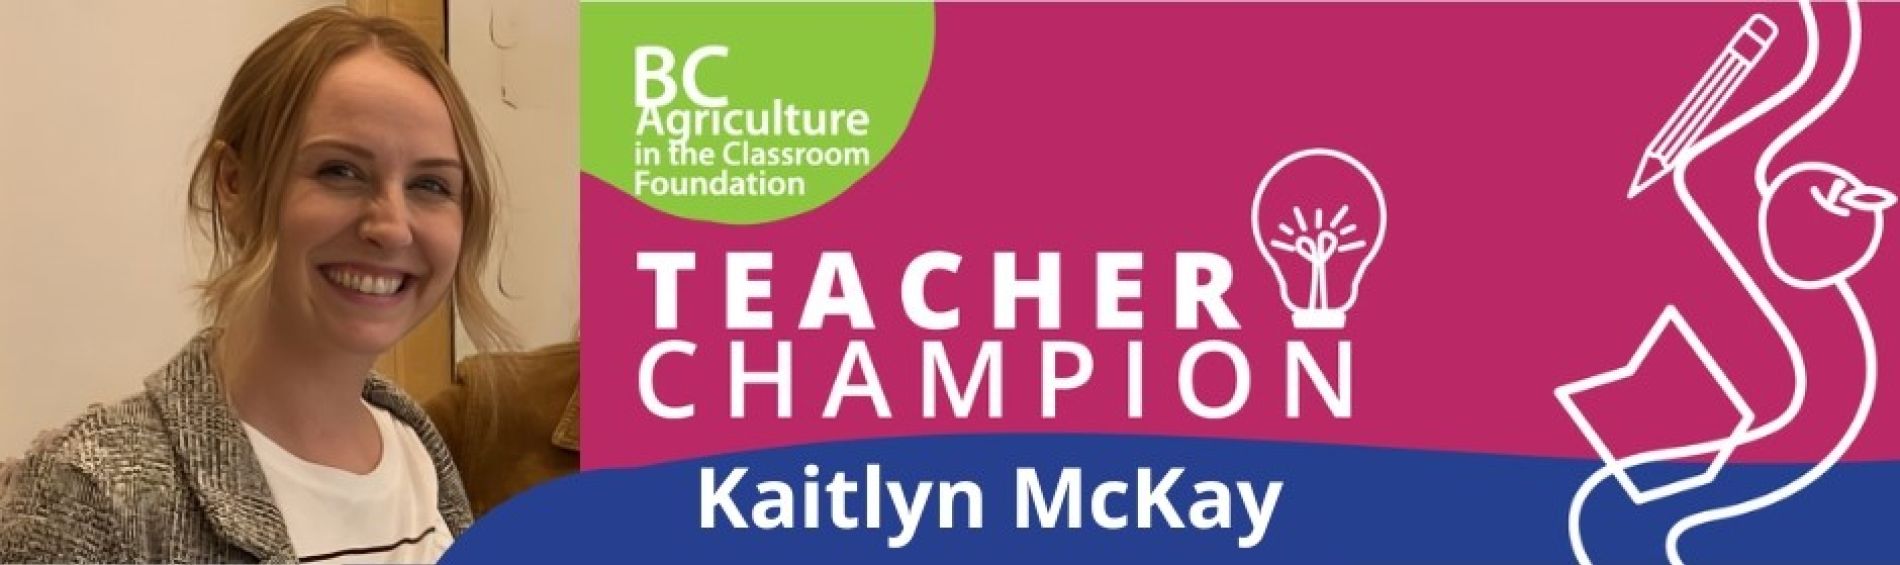 Teacher Champion - Kaitlyn McKay